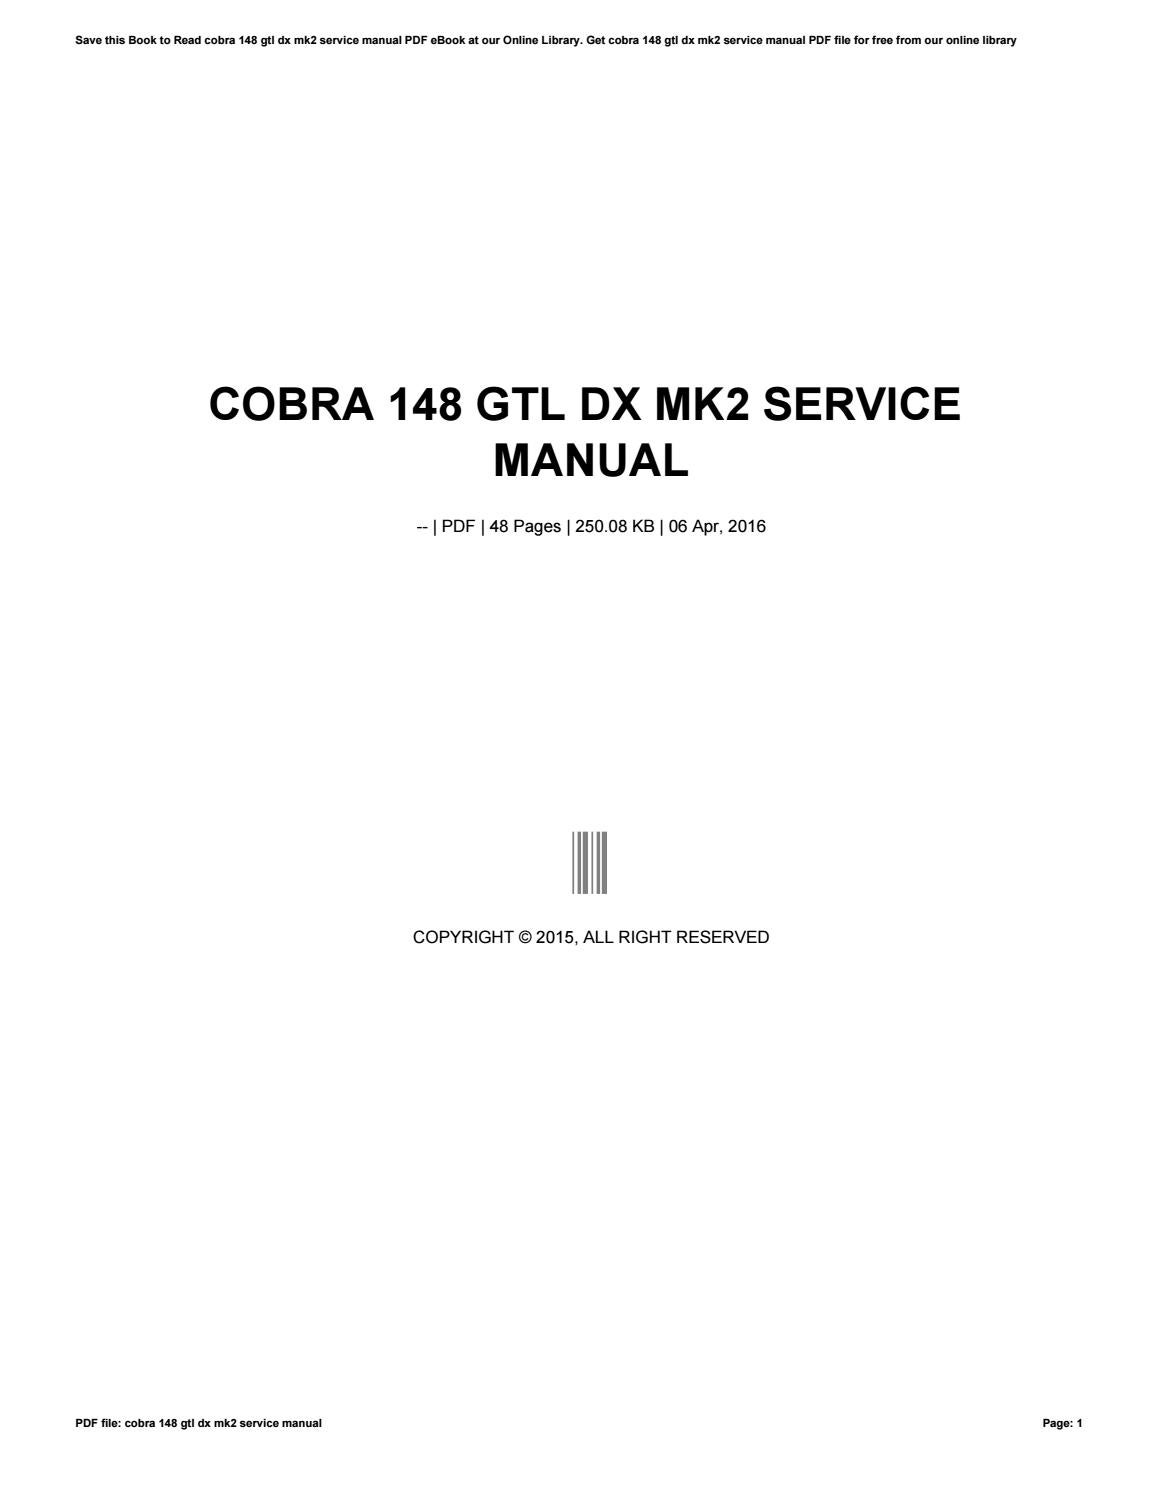 cobra 148 gtl dx mk2 service manual